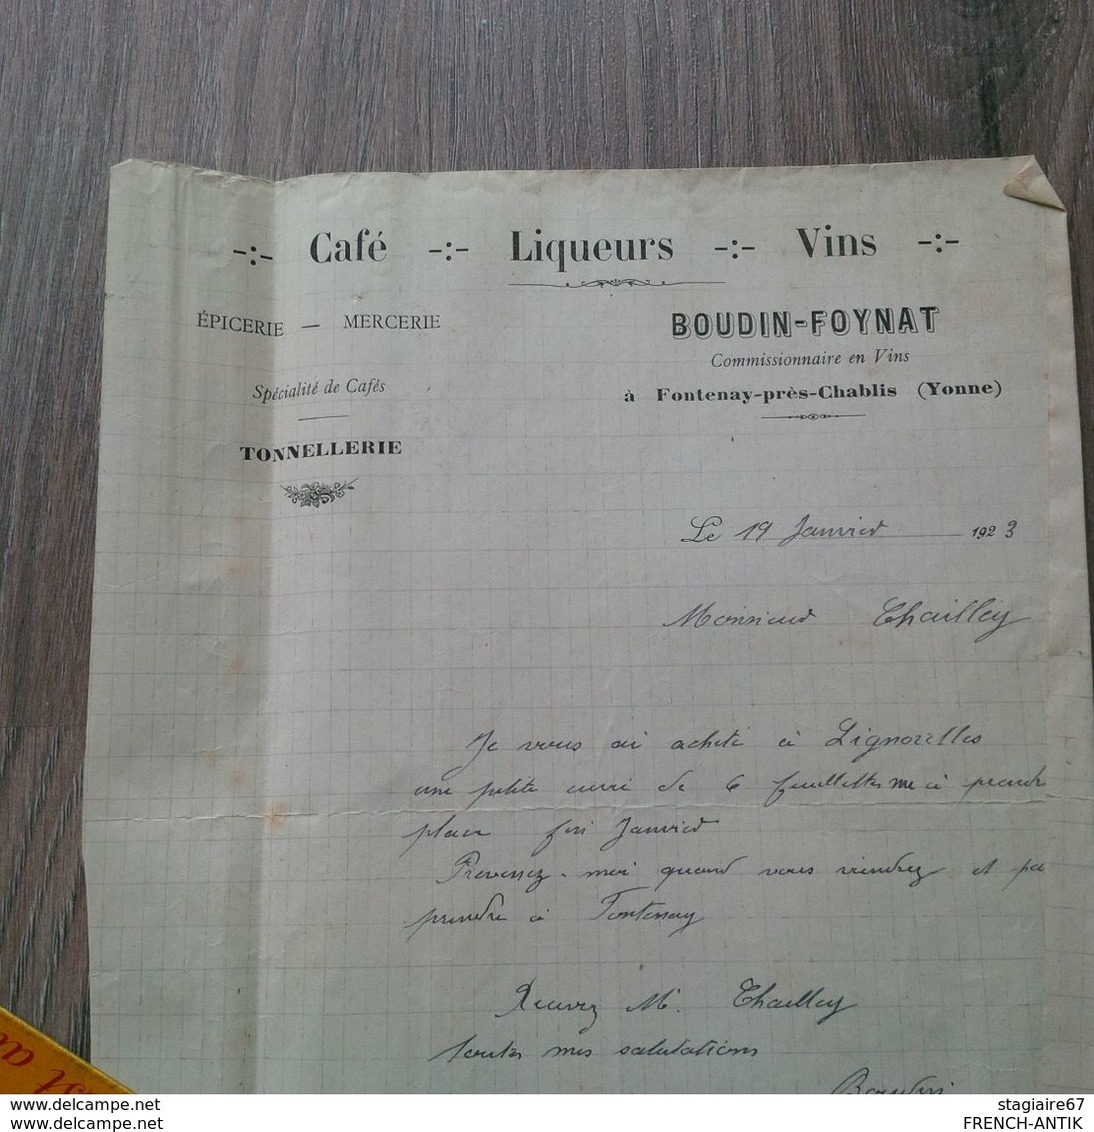 beau lot de document sur la vigne et le vin viniculture facture photo et divers documents fin 1700 a 1950